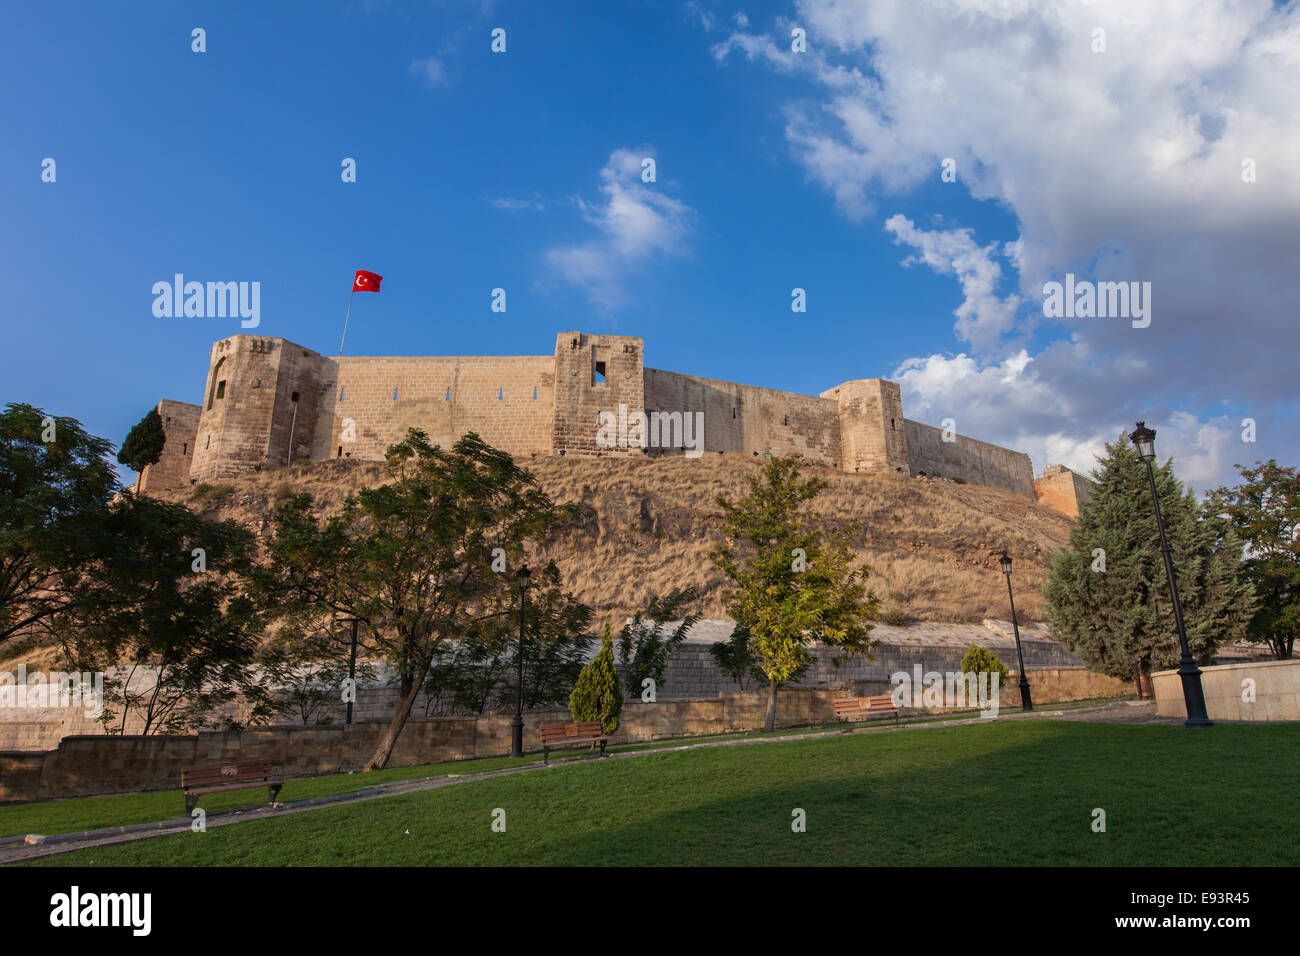 Le château (Kale) de Gaziantep, le monument le plus célèbre de la ville, au coucher du soleil sous un ciel bleu. Le sud-est de l'Anatolie, Turquie. Banque D'Images